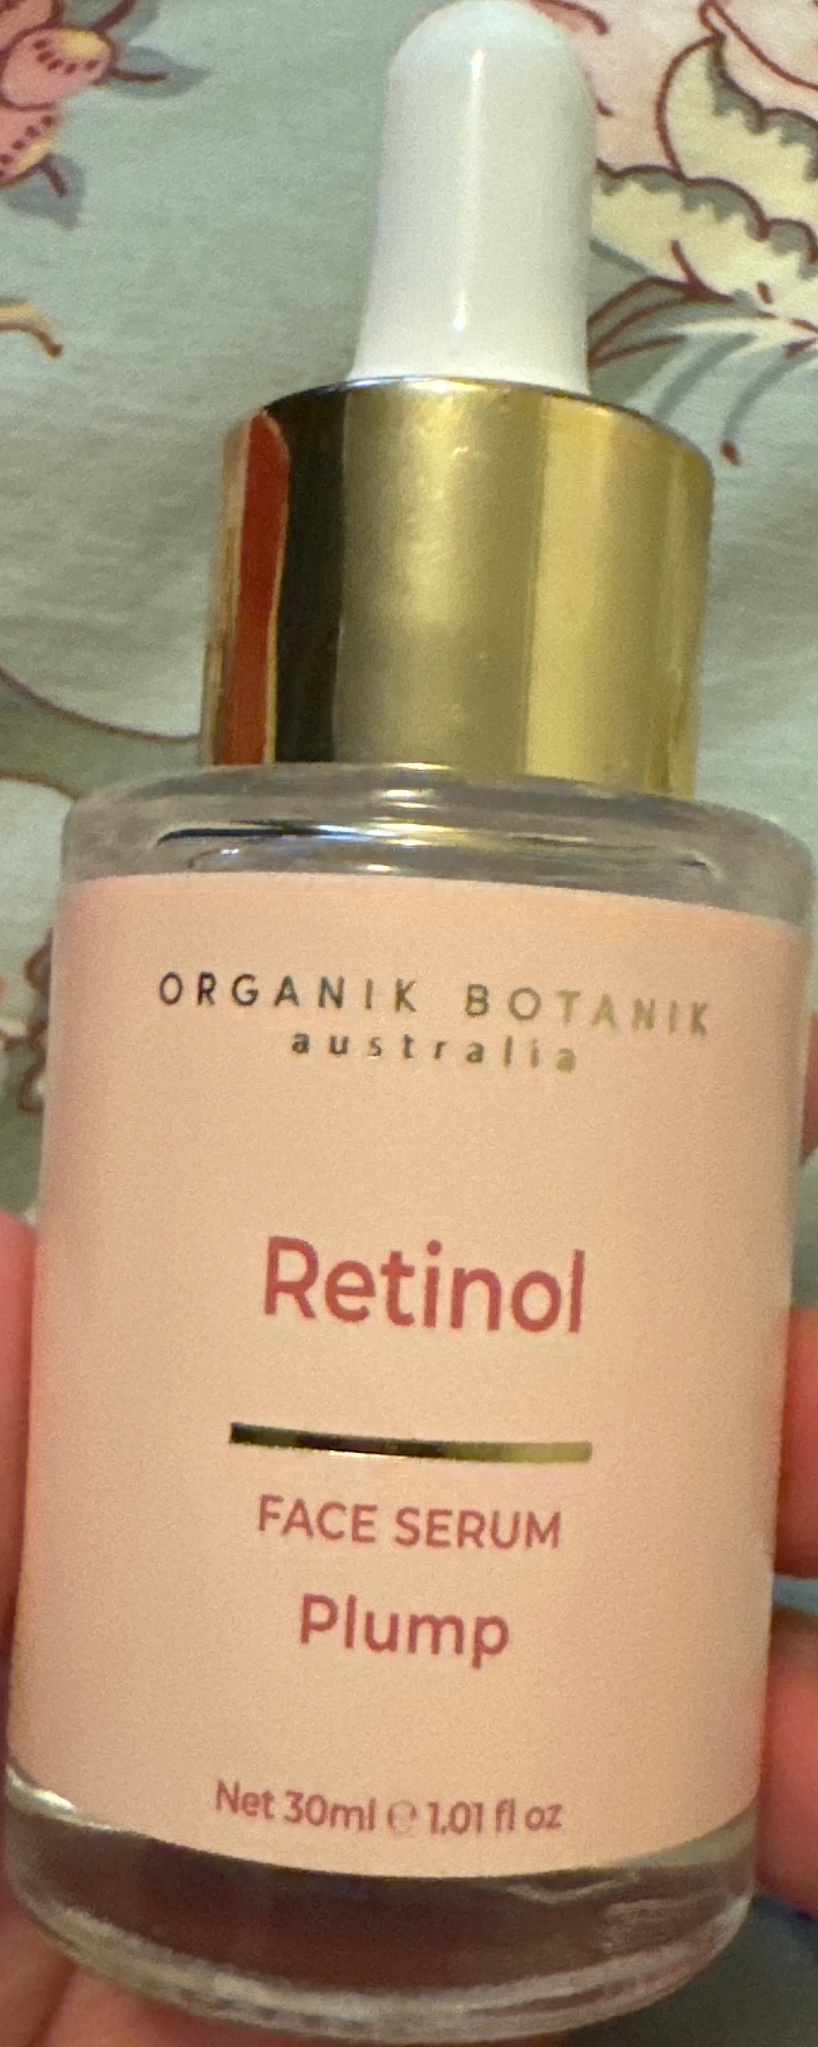 Organik botanik Retinol Serum